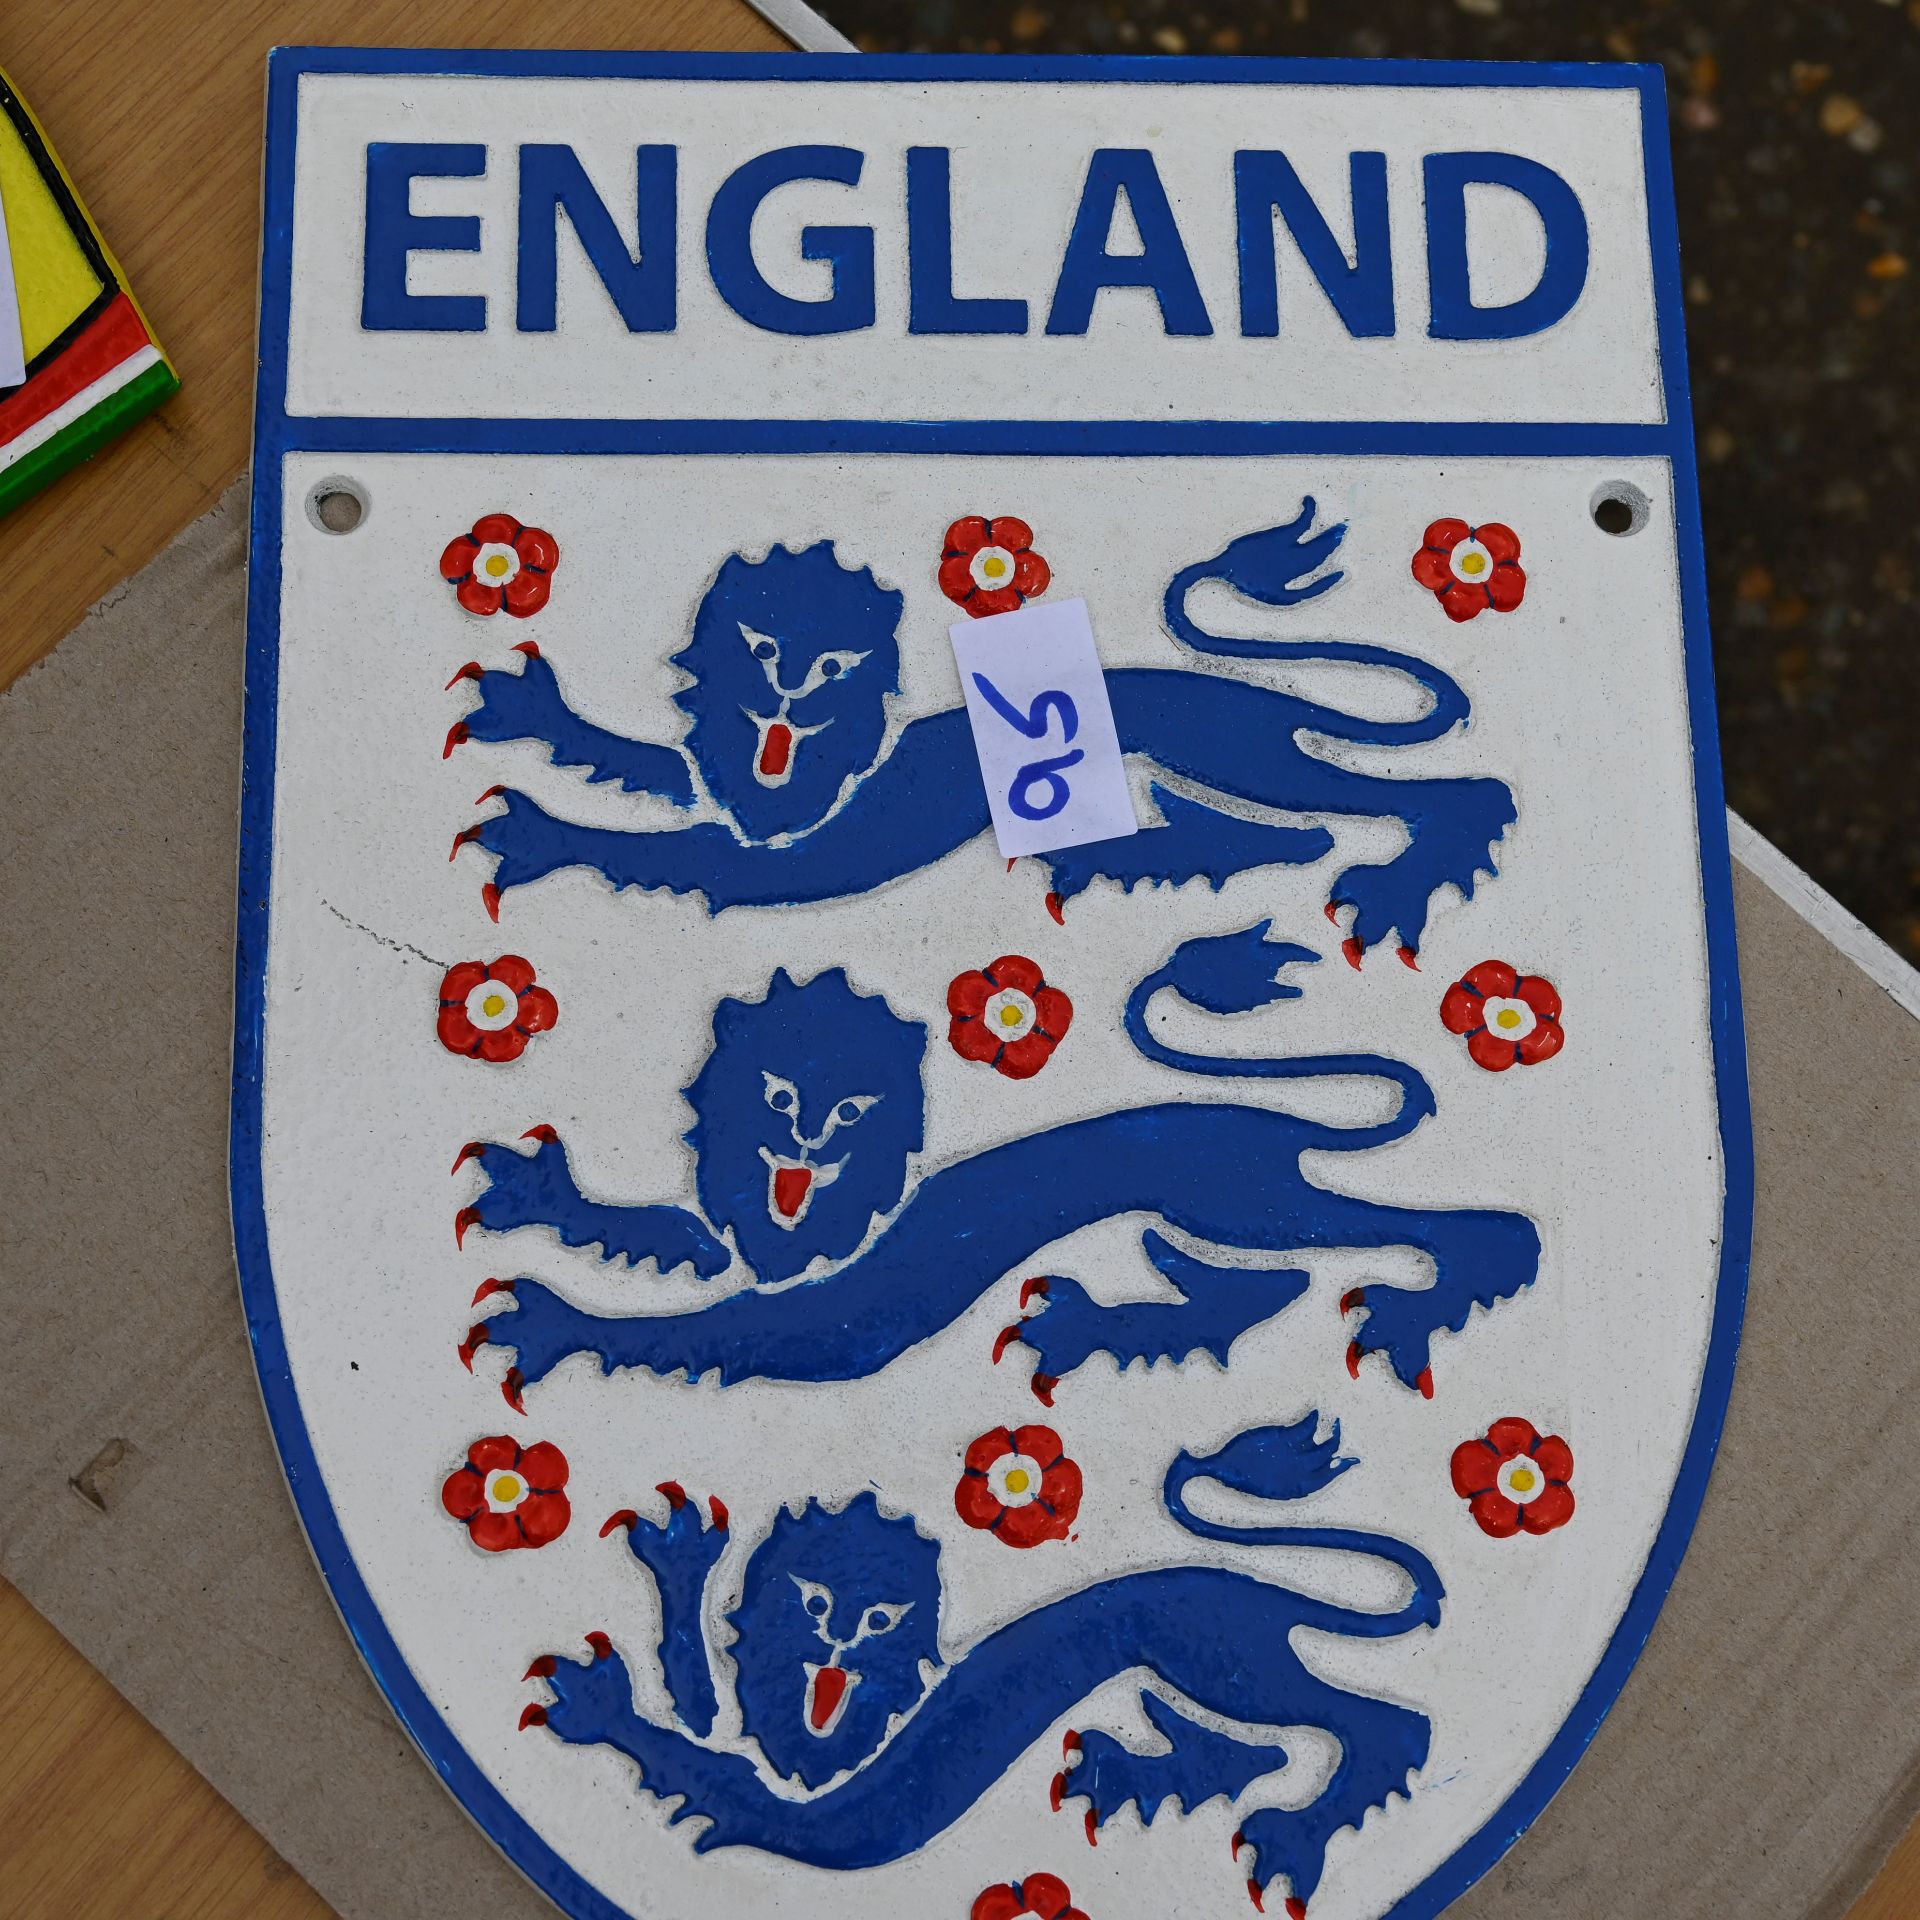 England football plaque